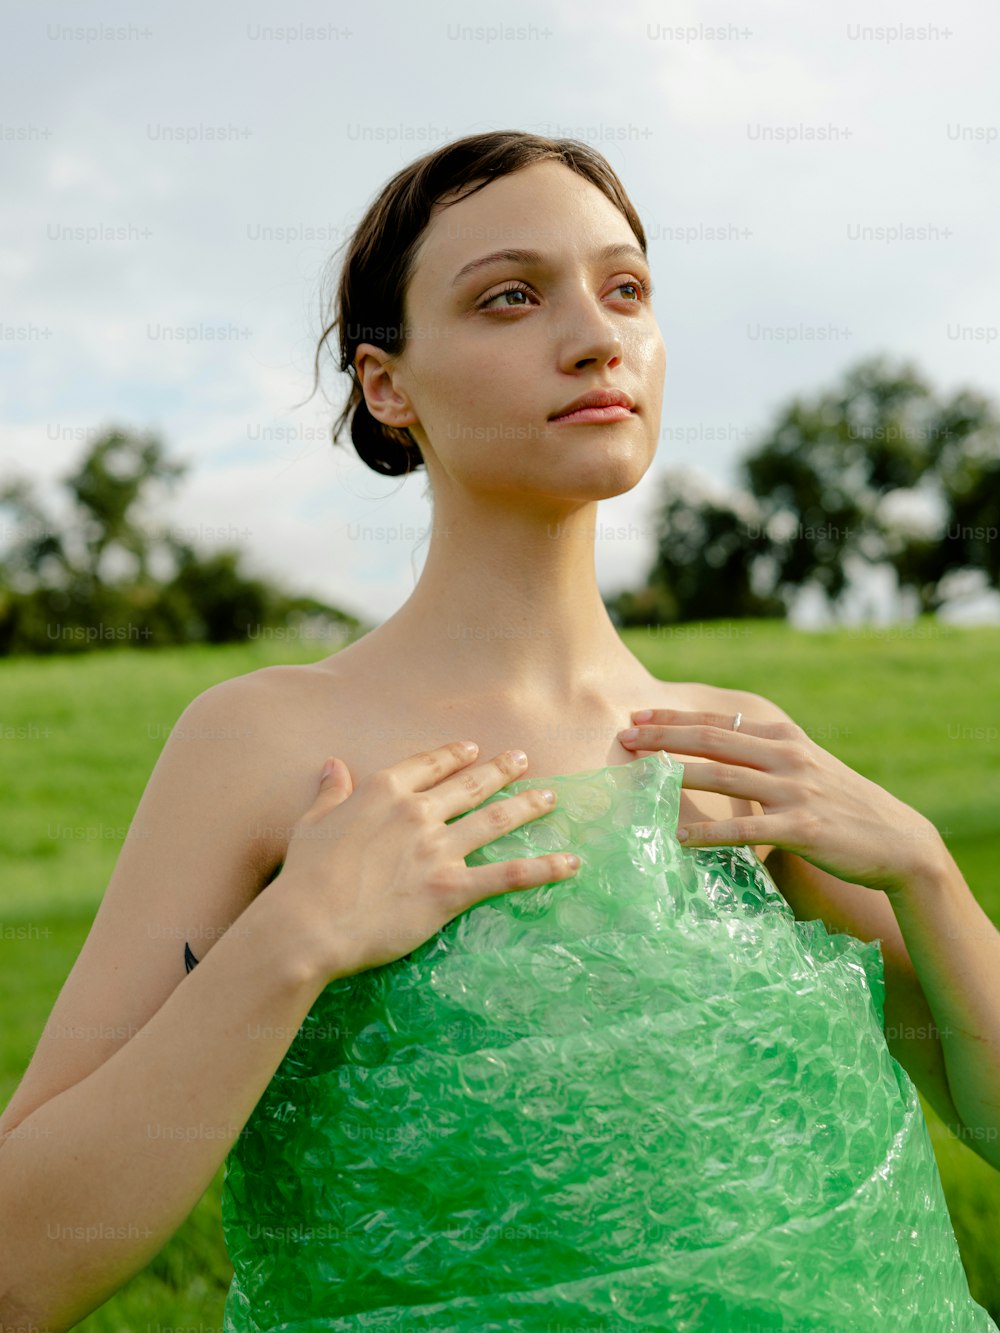 Une femme en robe verte debout dans un champ